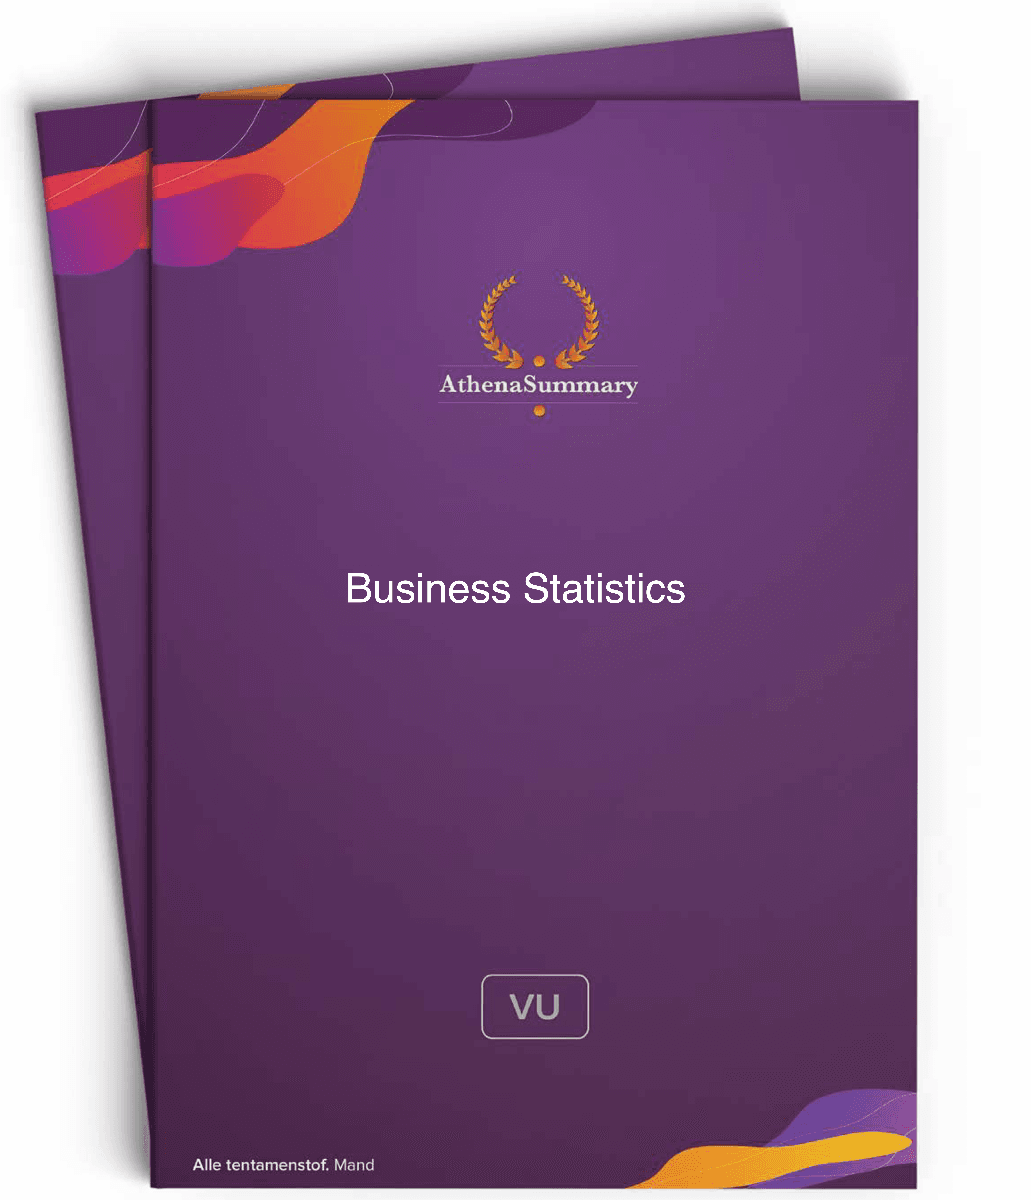 Summary: Business Statistics